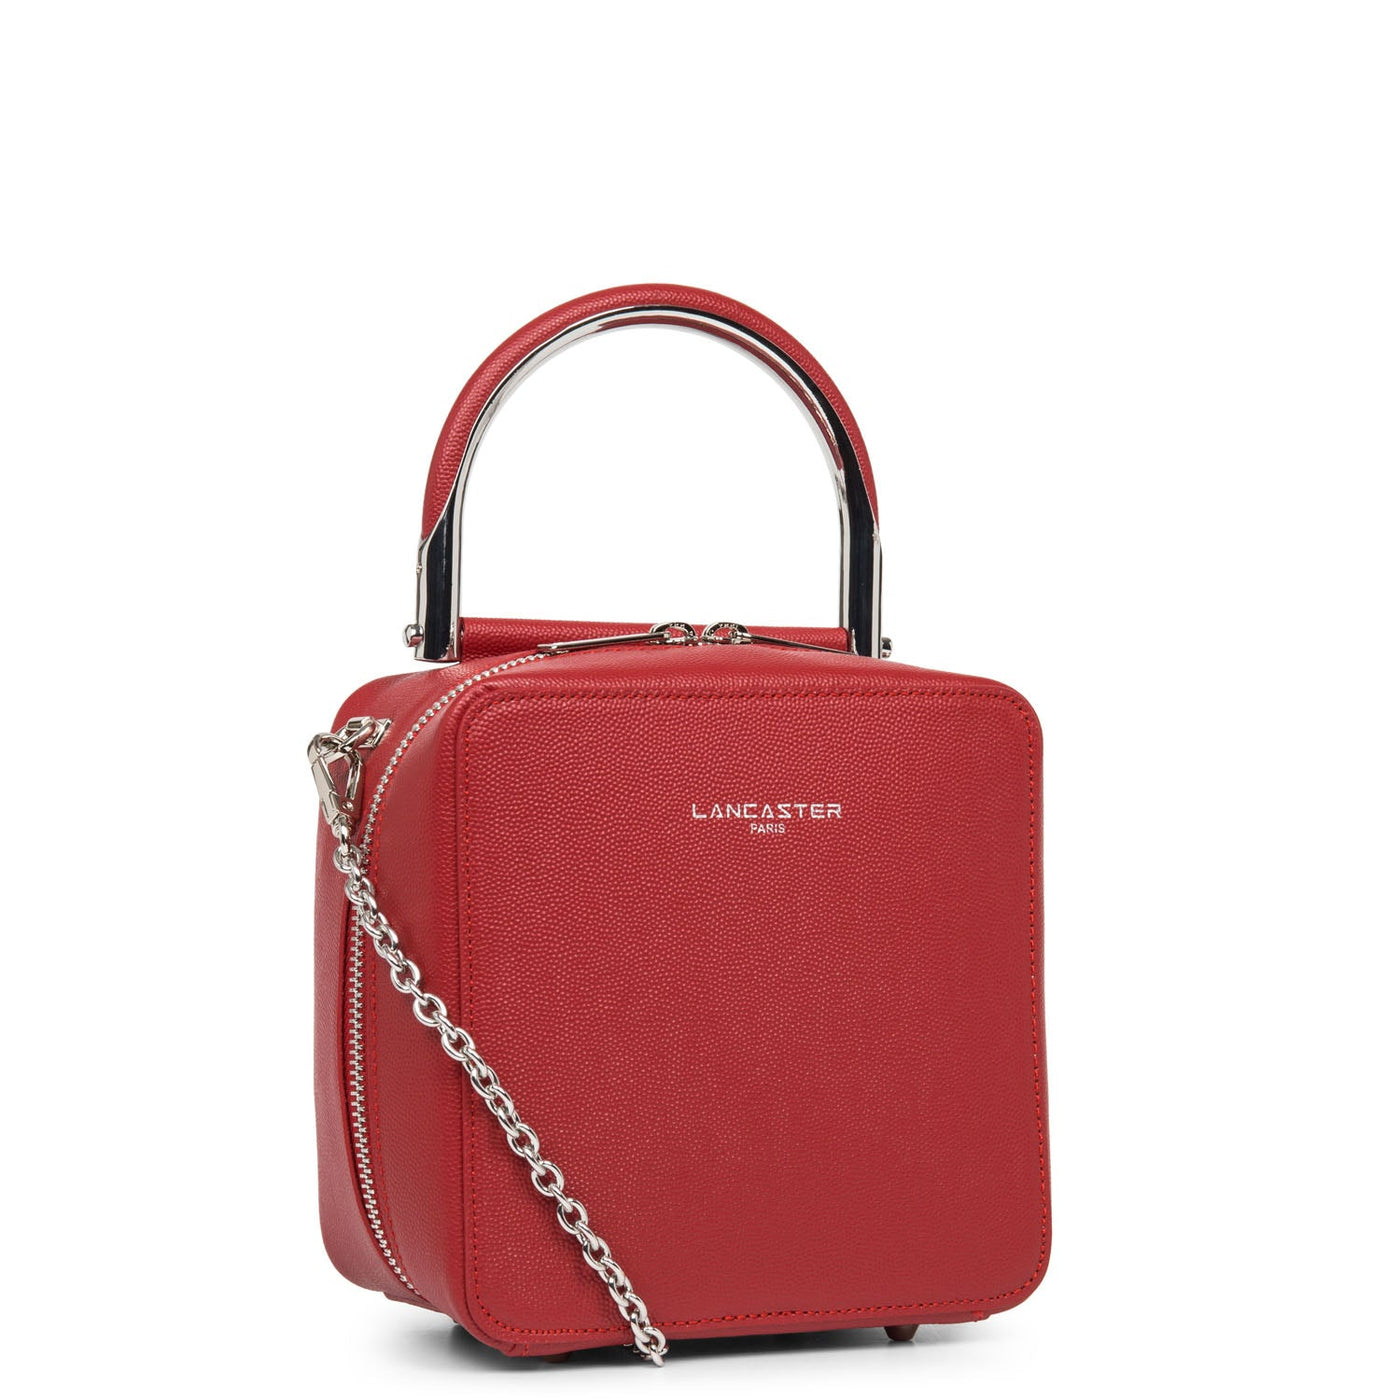 box bag - exotic bonnie #couleur_rouge